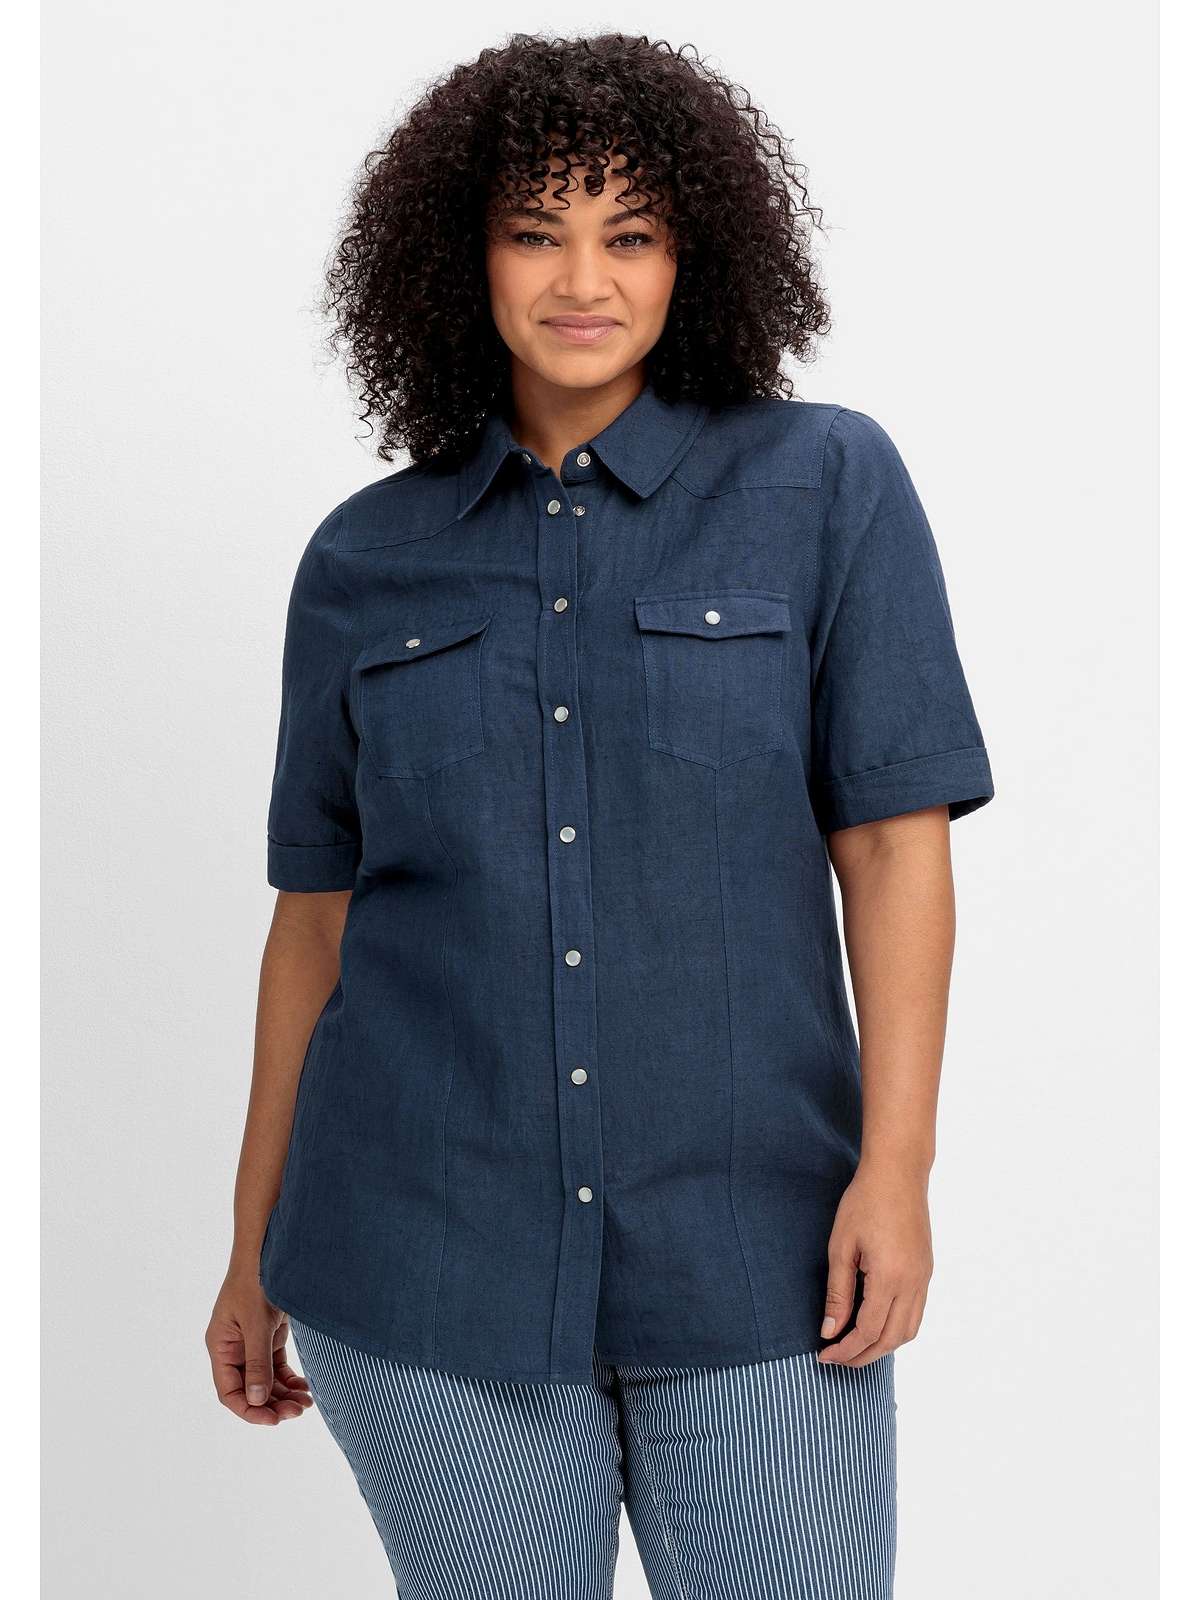 Блузка-рубашка из смесового льна с планкой на кнопках